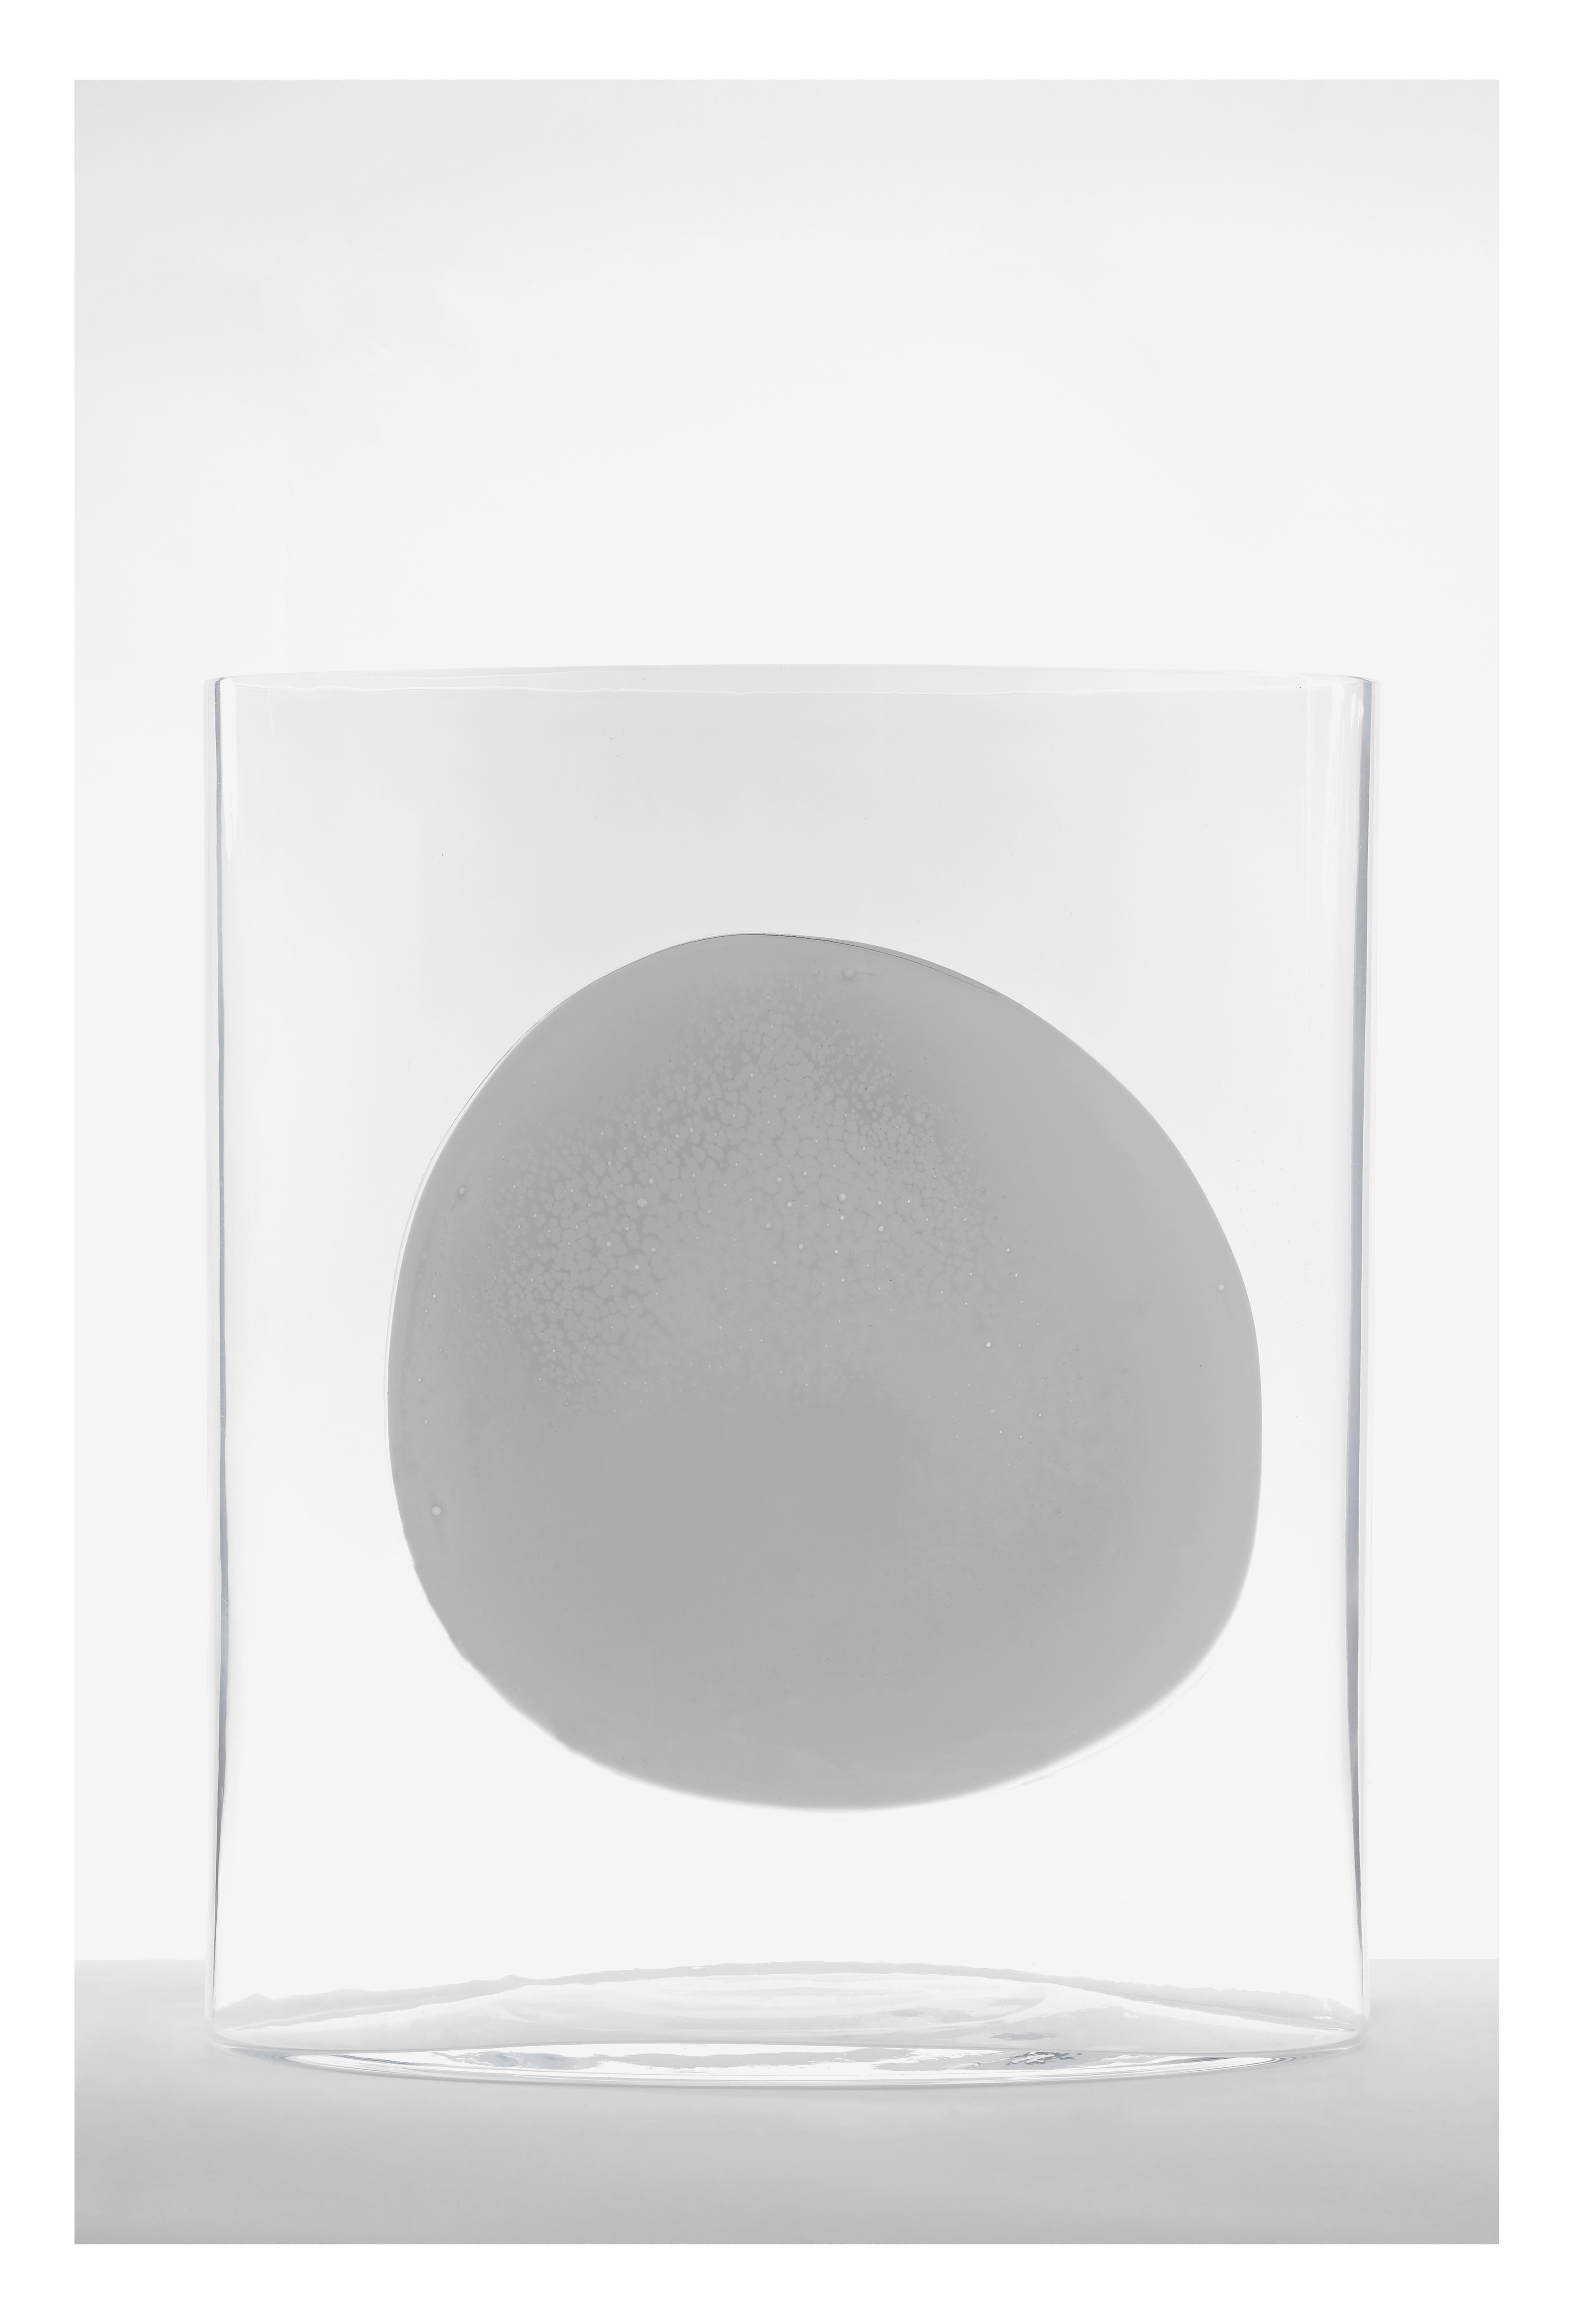 Isla ist das Ergebnis einer einjährigen Zusammenarbeit zwischen dem schweizerisch-französischen Designer und dem Studio Nouvel und erforscht das Nebeneinander von unzähligen Farbtönen und Glastransparenzen in zwei verschiedenen Vasengrößen. Die